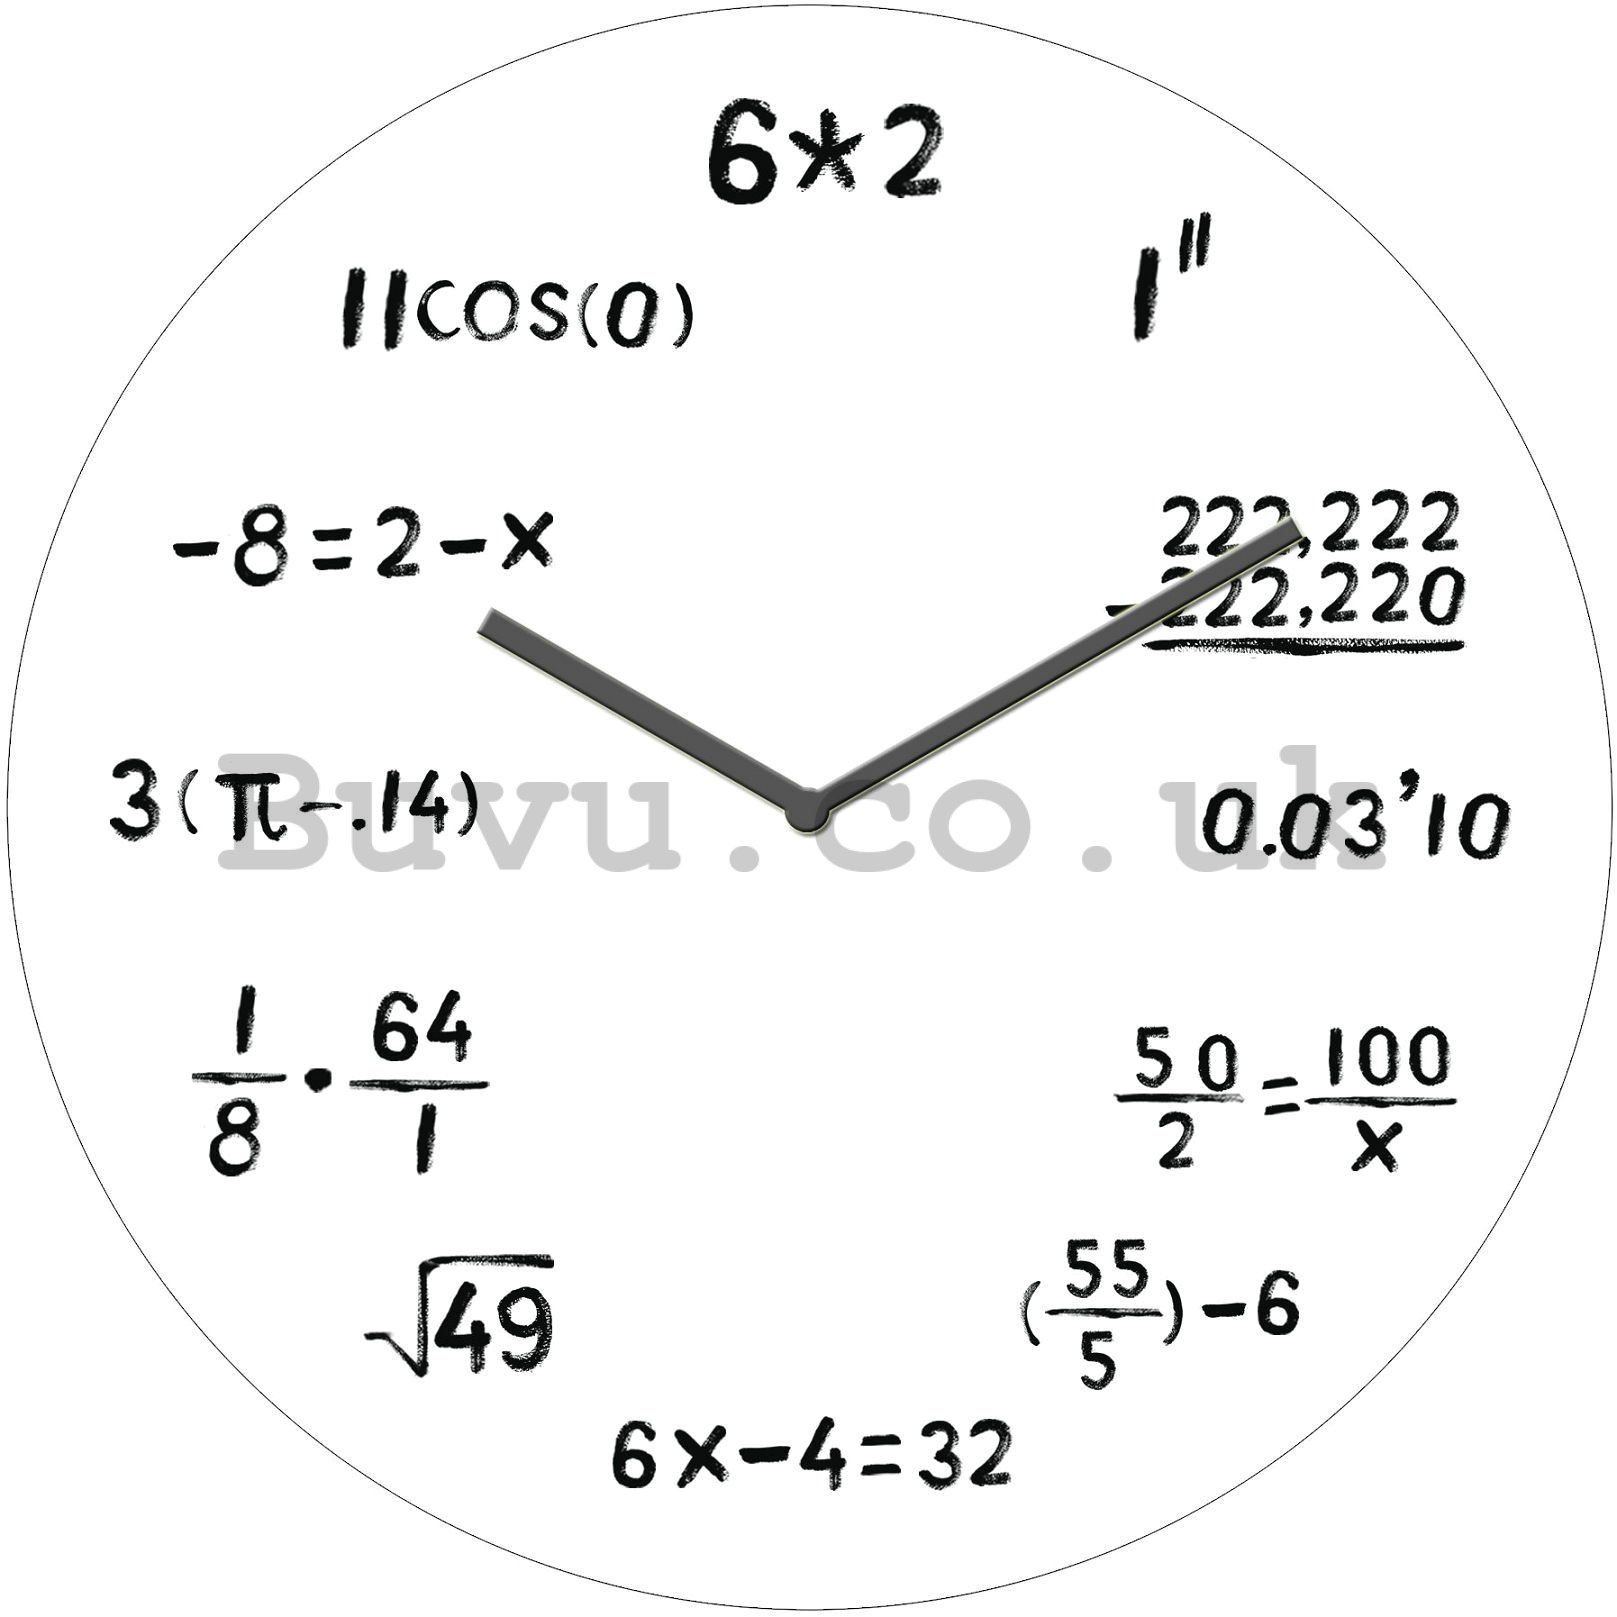 Glass wall clock - Mathematics (2)